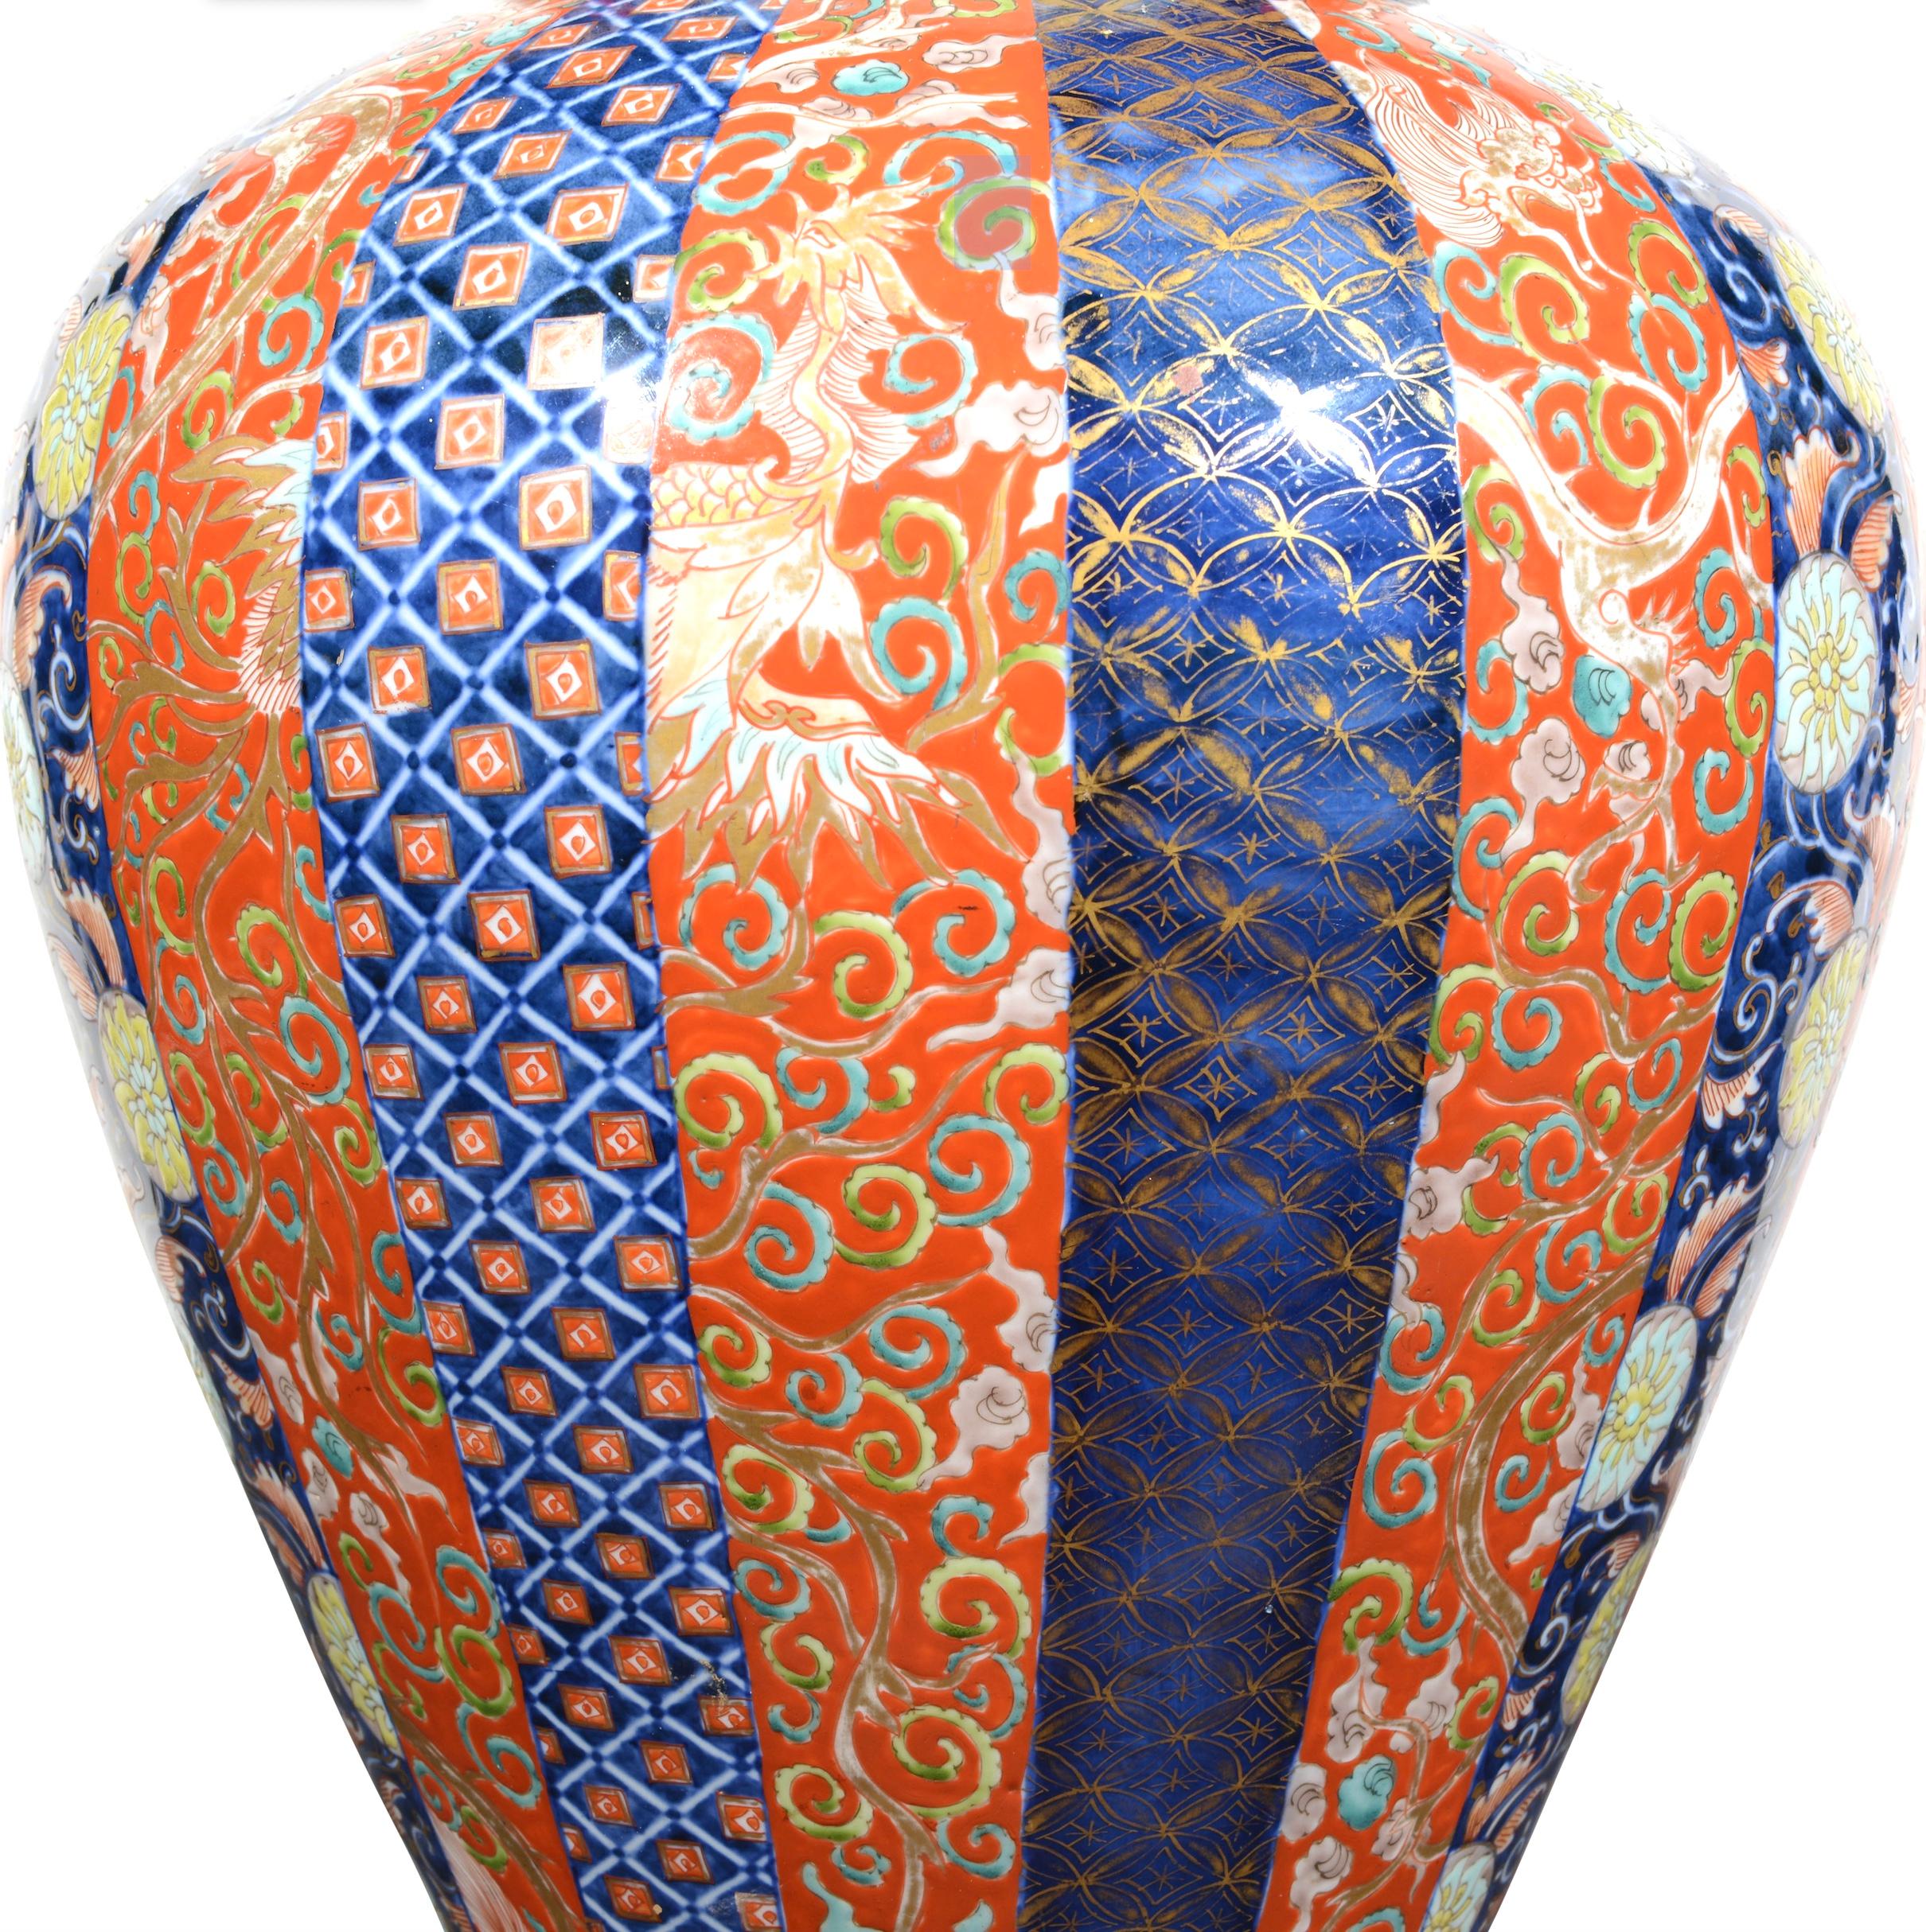 Eine schöne große japanische Imari-Vase aus dem späten 19. Jahrhundert, dekoriert in der typischen Imari-Palette von Eisenrot und Blau mit vergoldeten Highlights in einem wiederholten Streifenmuster, jetzt als Lampe mit handvergoldetem Sockel